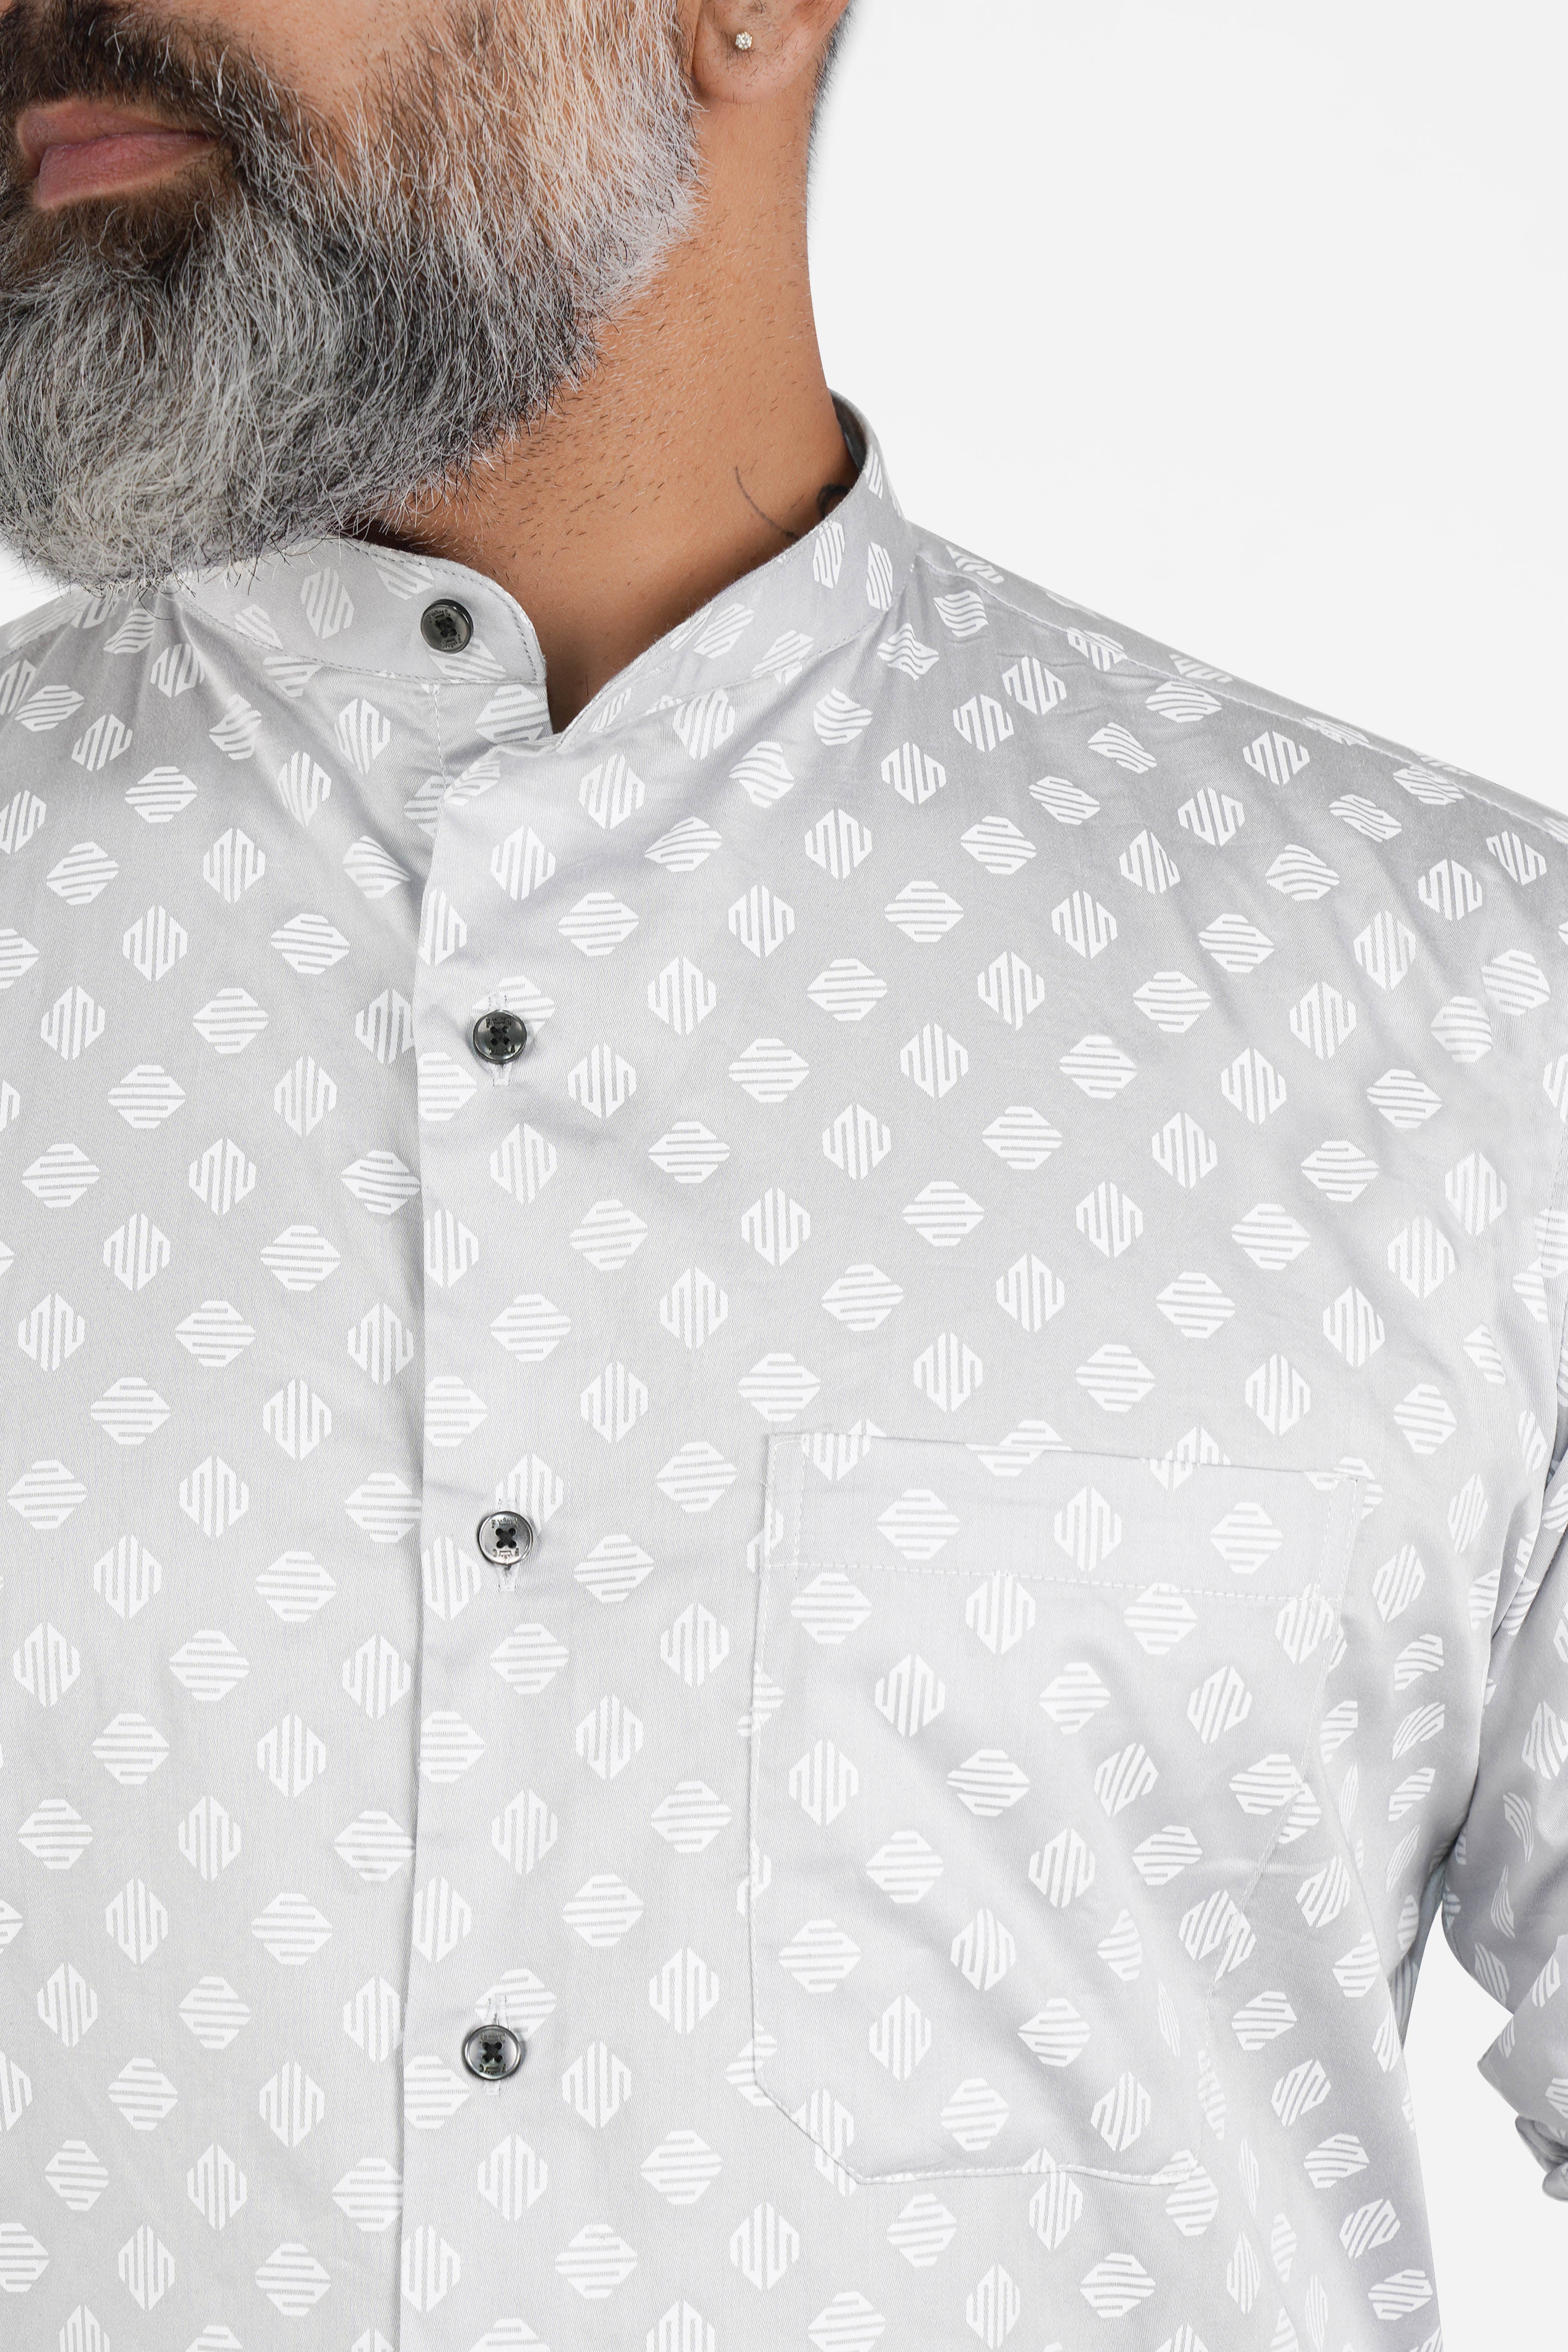 Timberwolf Gray with White Printed Super Soft Premium Cotton Shirt